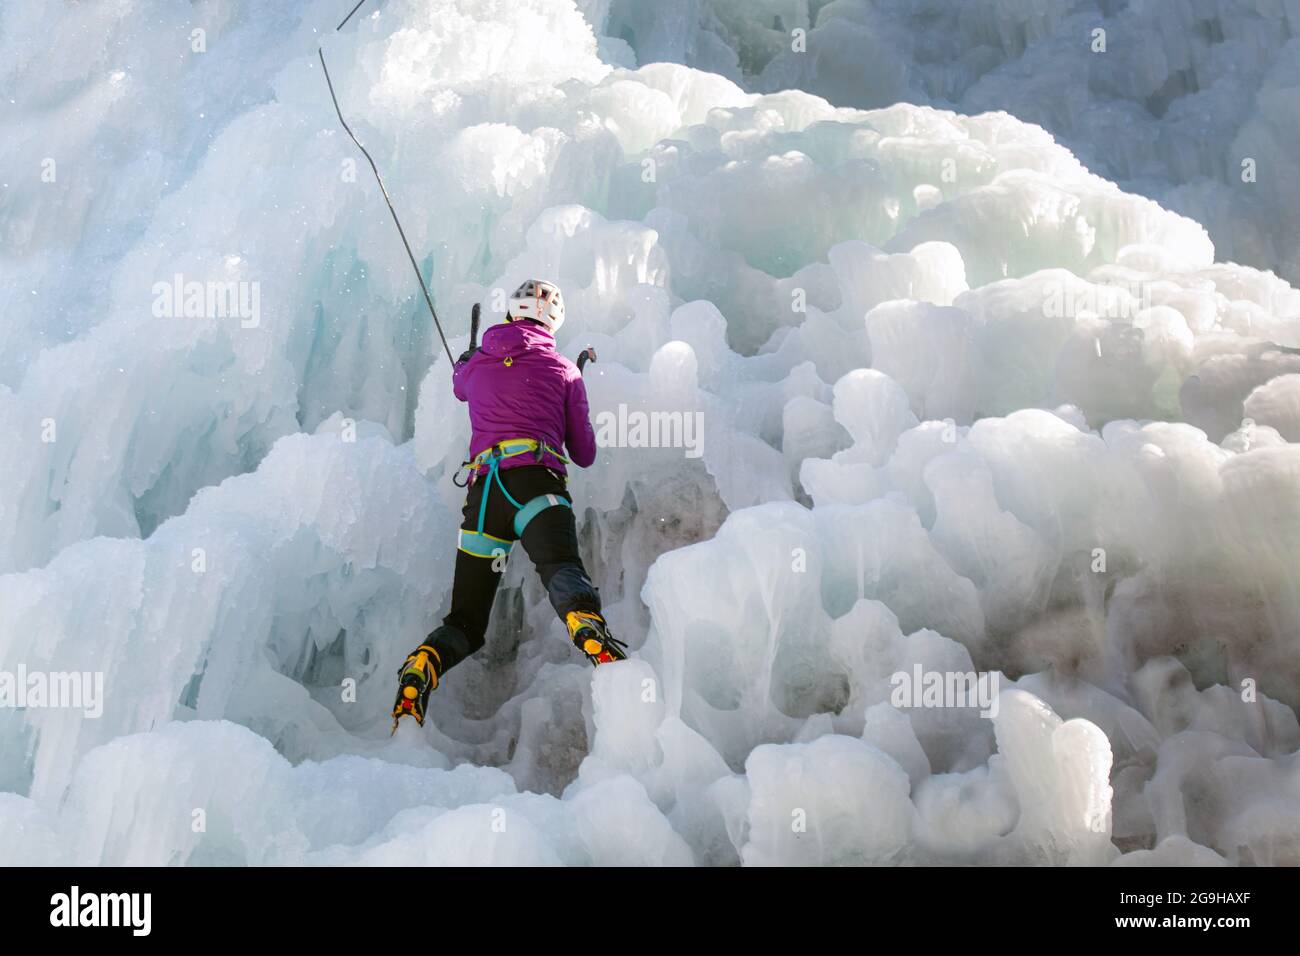 Eiskletterinnen mit Eiskletterausrüstung, Äxten, Helm, Geschirr und Steigeisen, die an einem gefrorenen Wasserfall hängen, Rückansicht Stockfoto